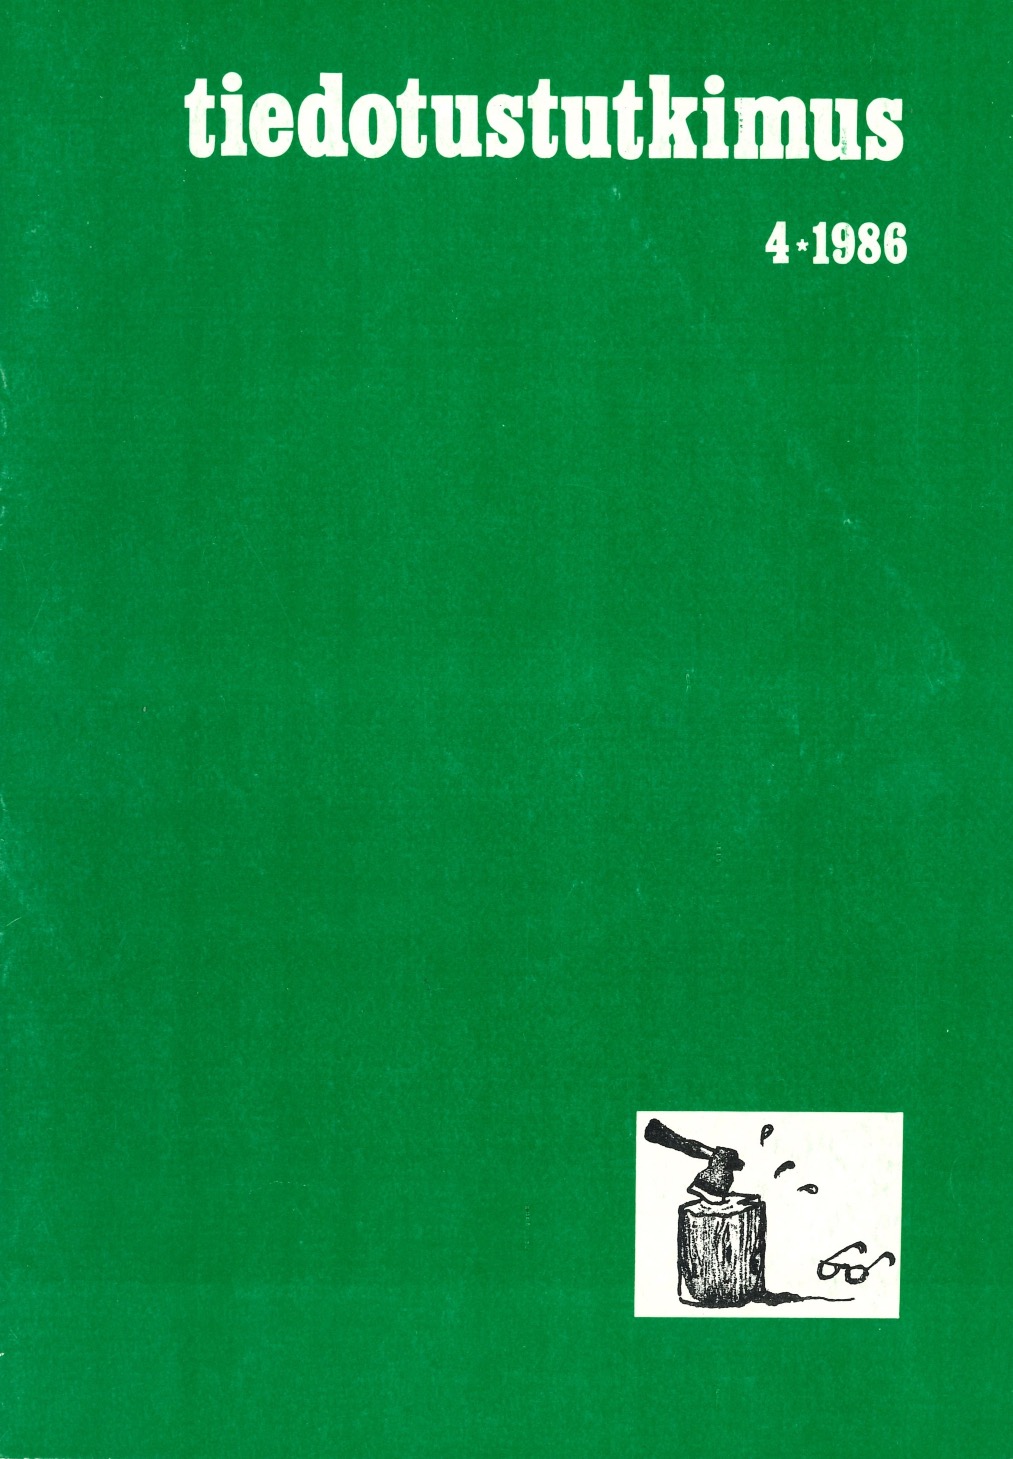 					Näytä Vol 9 Nro 4 (1986)
				